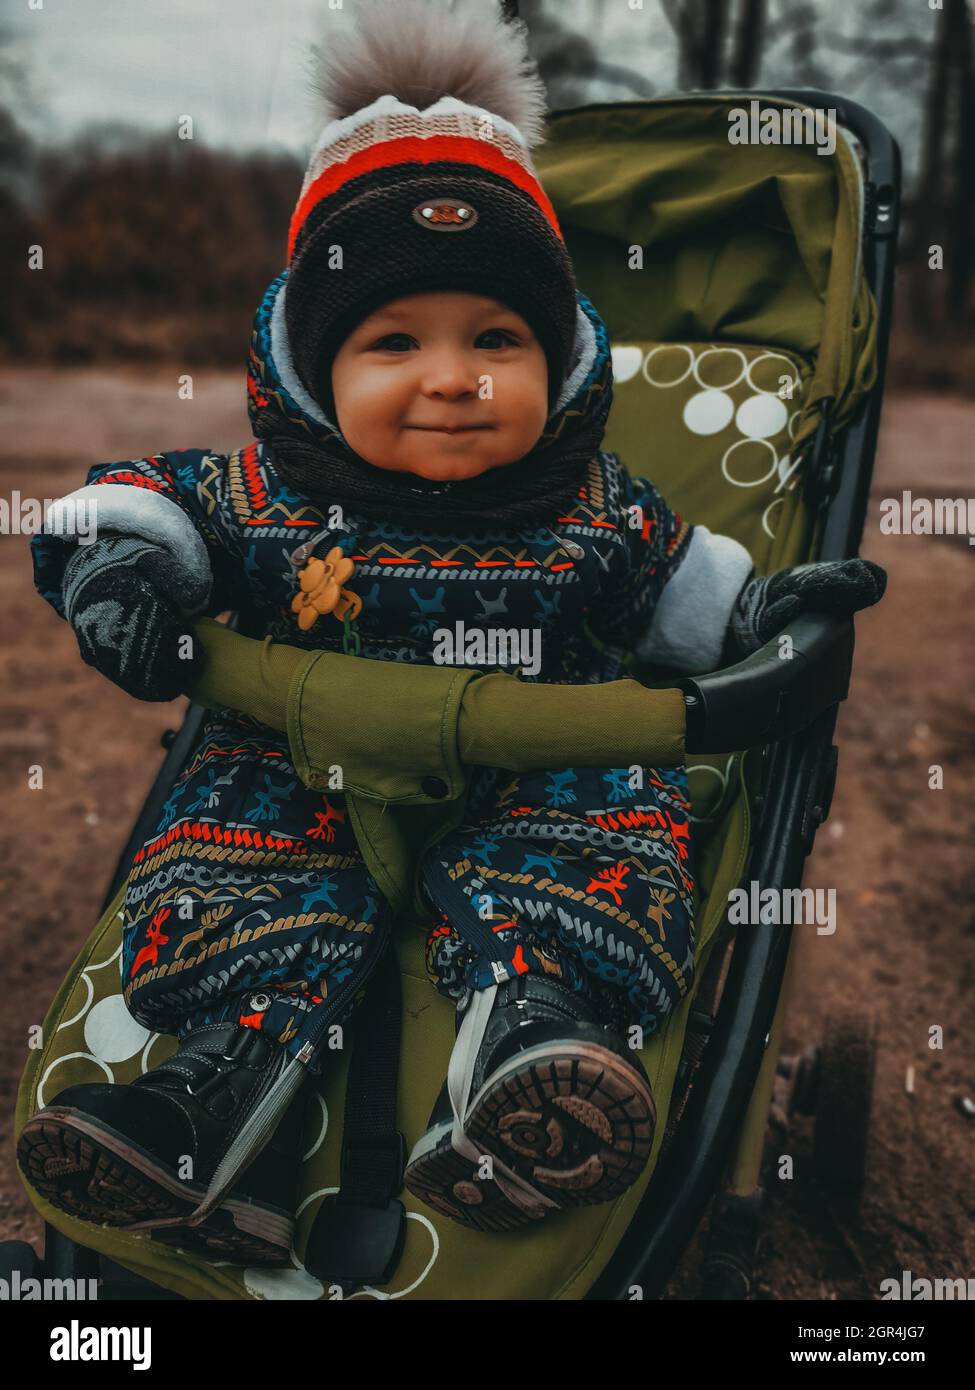 Portrait Of Cute Boy In Stroller In Winter Stock Photo